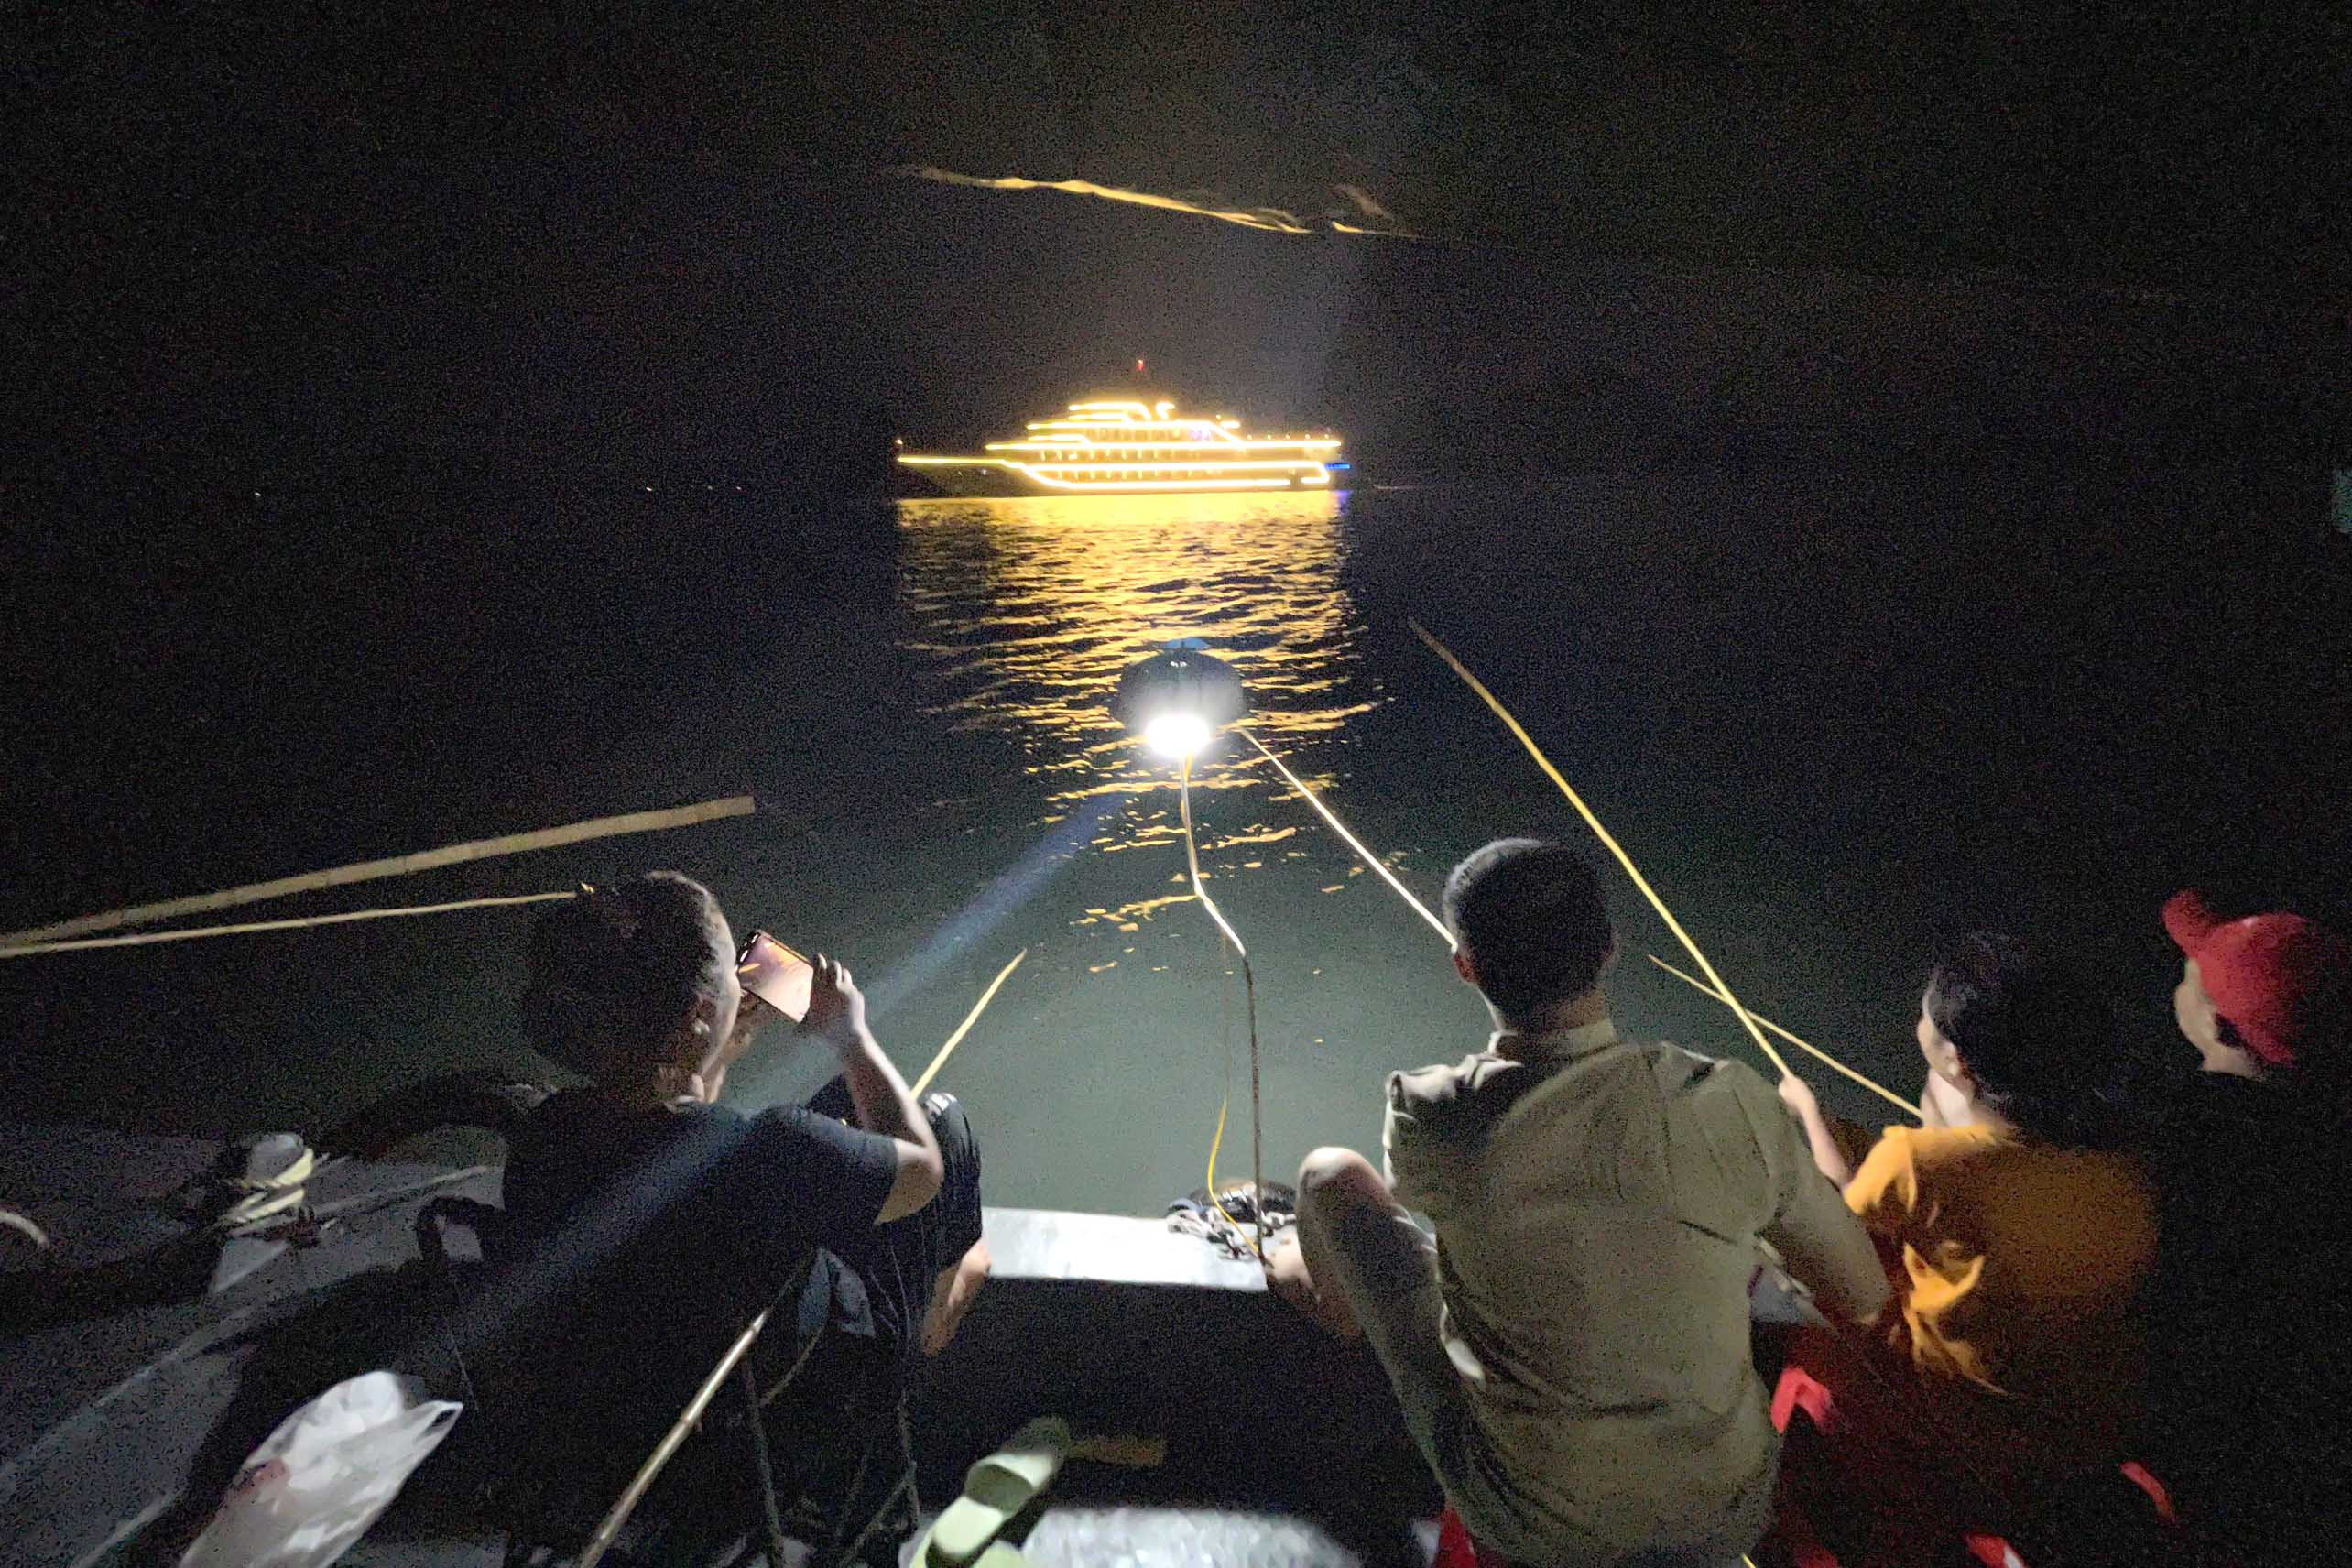 Đêm tối đen theo thuyền ra vịnh Hạ Long: Mất 2 triệu để săn con mực tươi rói - Ảnh 11.